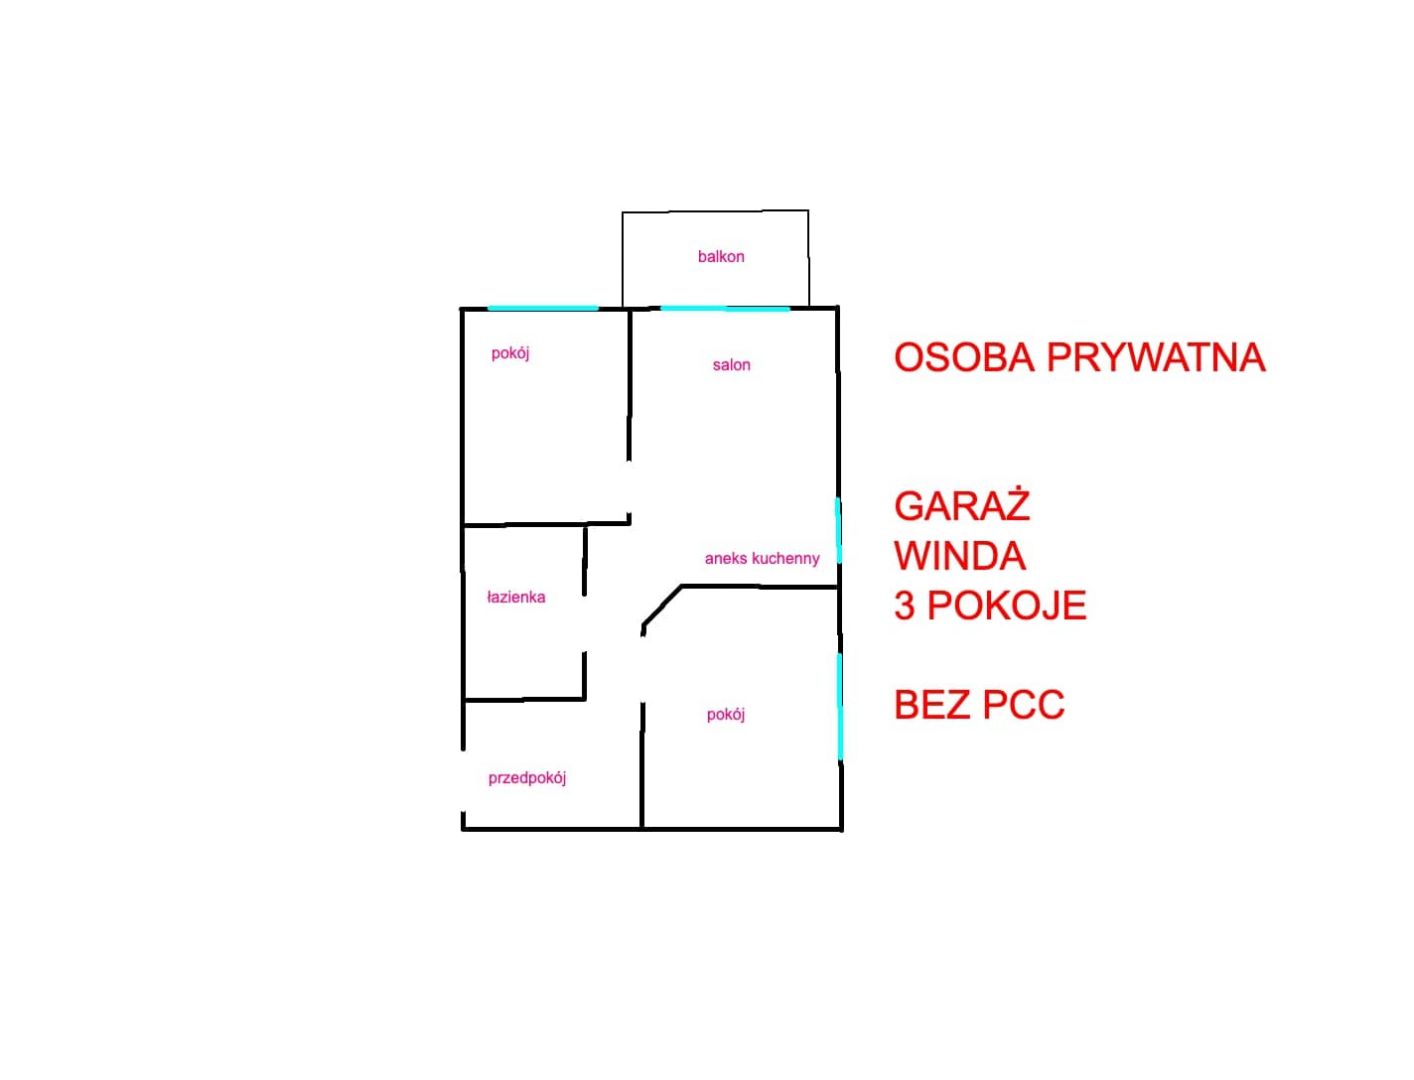 Mieszkanie 48.84m2, 3 pokoje, garaż, nowe Wrocław - Zdjęcie 1